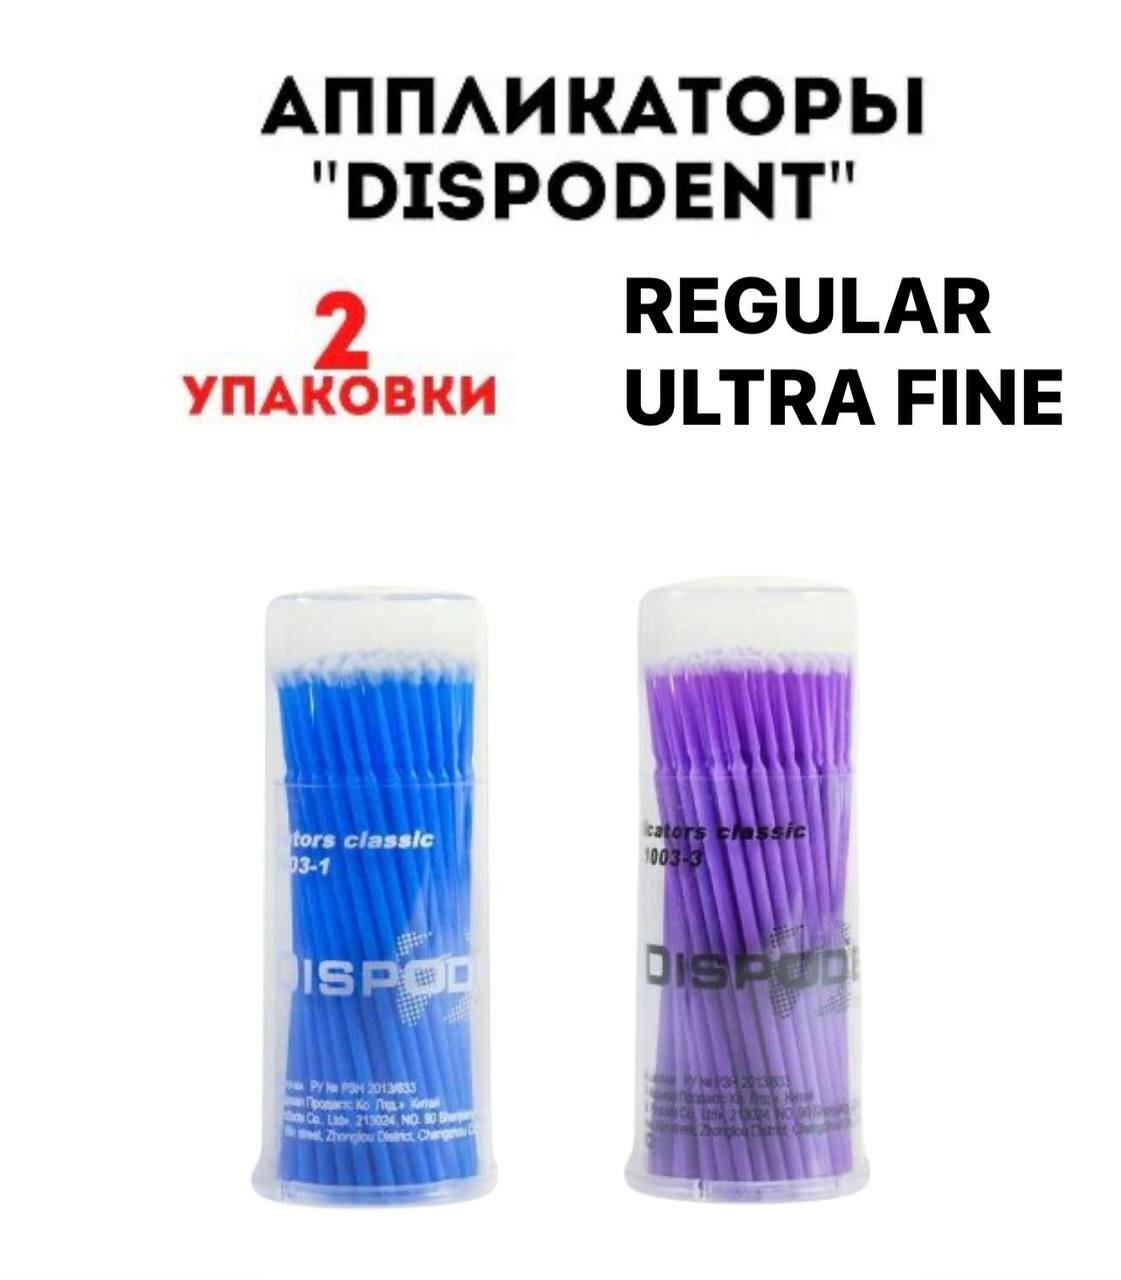 DISPODENT/ Апликаторы Ultra Fine и Regular 2 упаковки по 100 шт